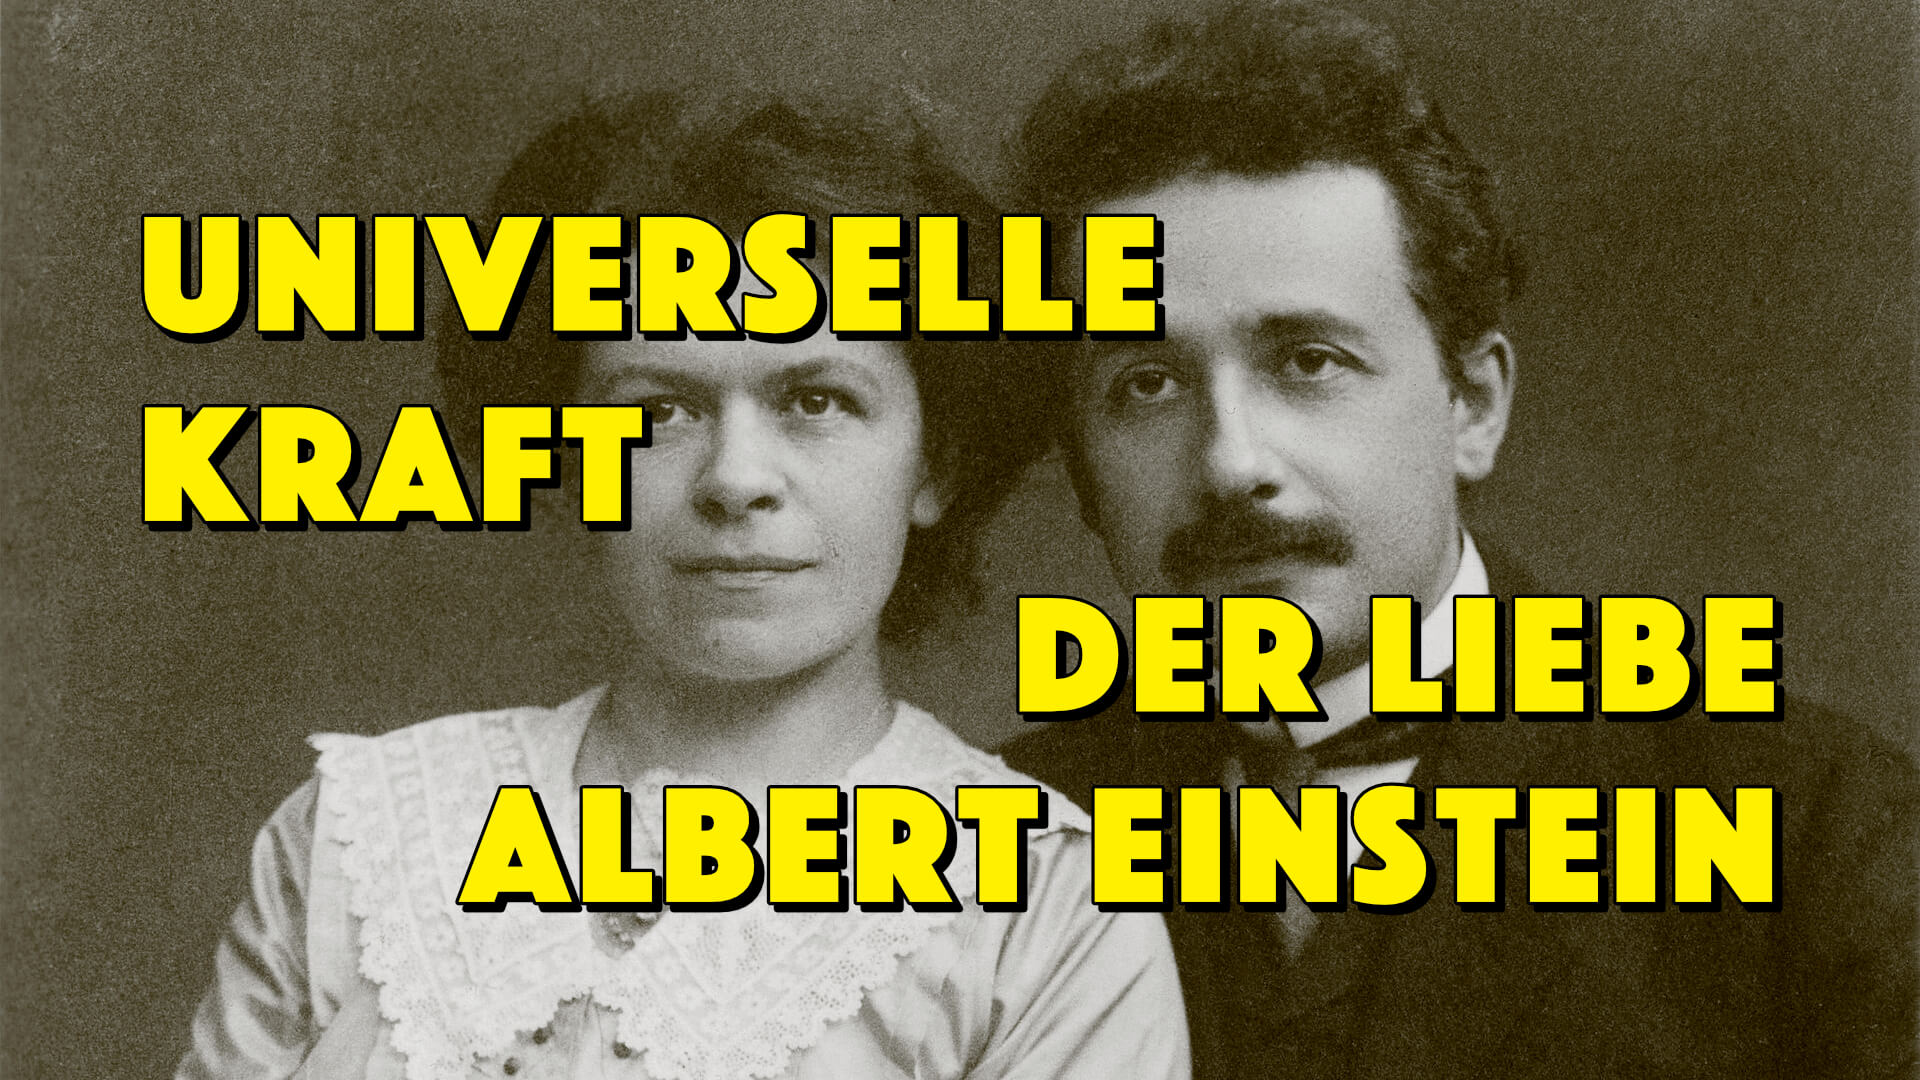 Geistesblitze Movie Universelle Kraft Der Liebe Albert Einstein Tangsworld